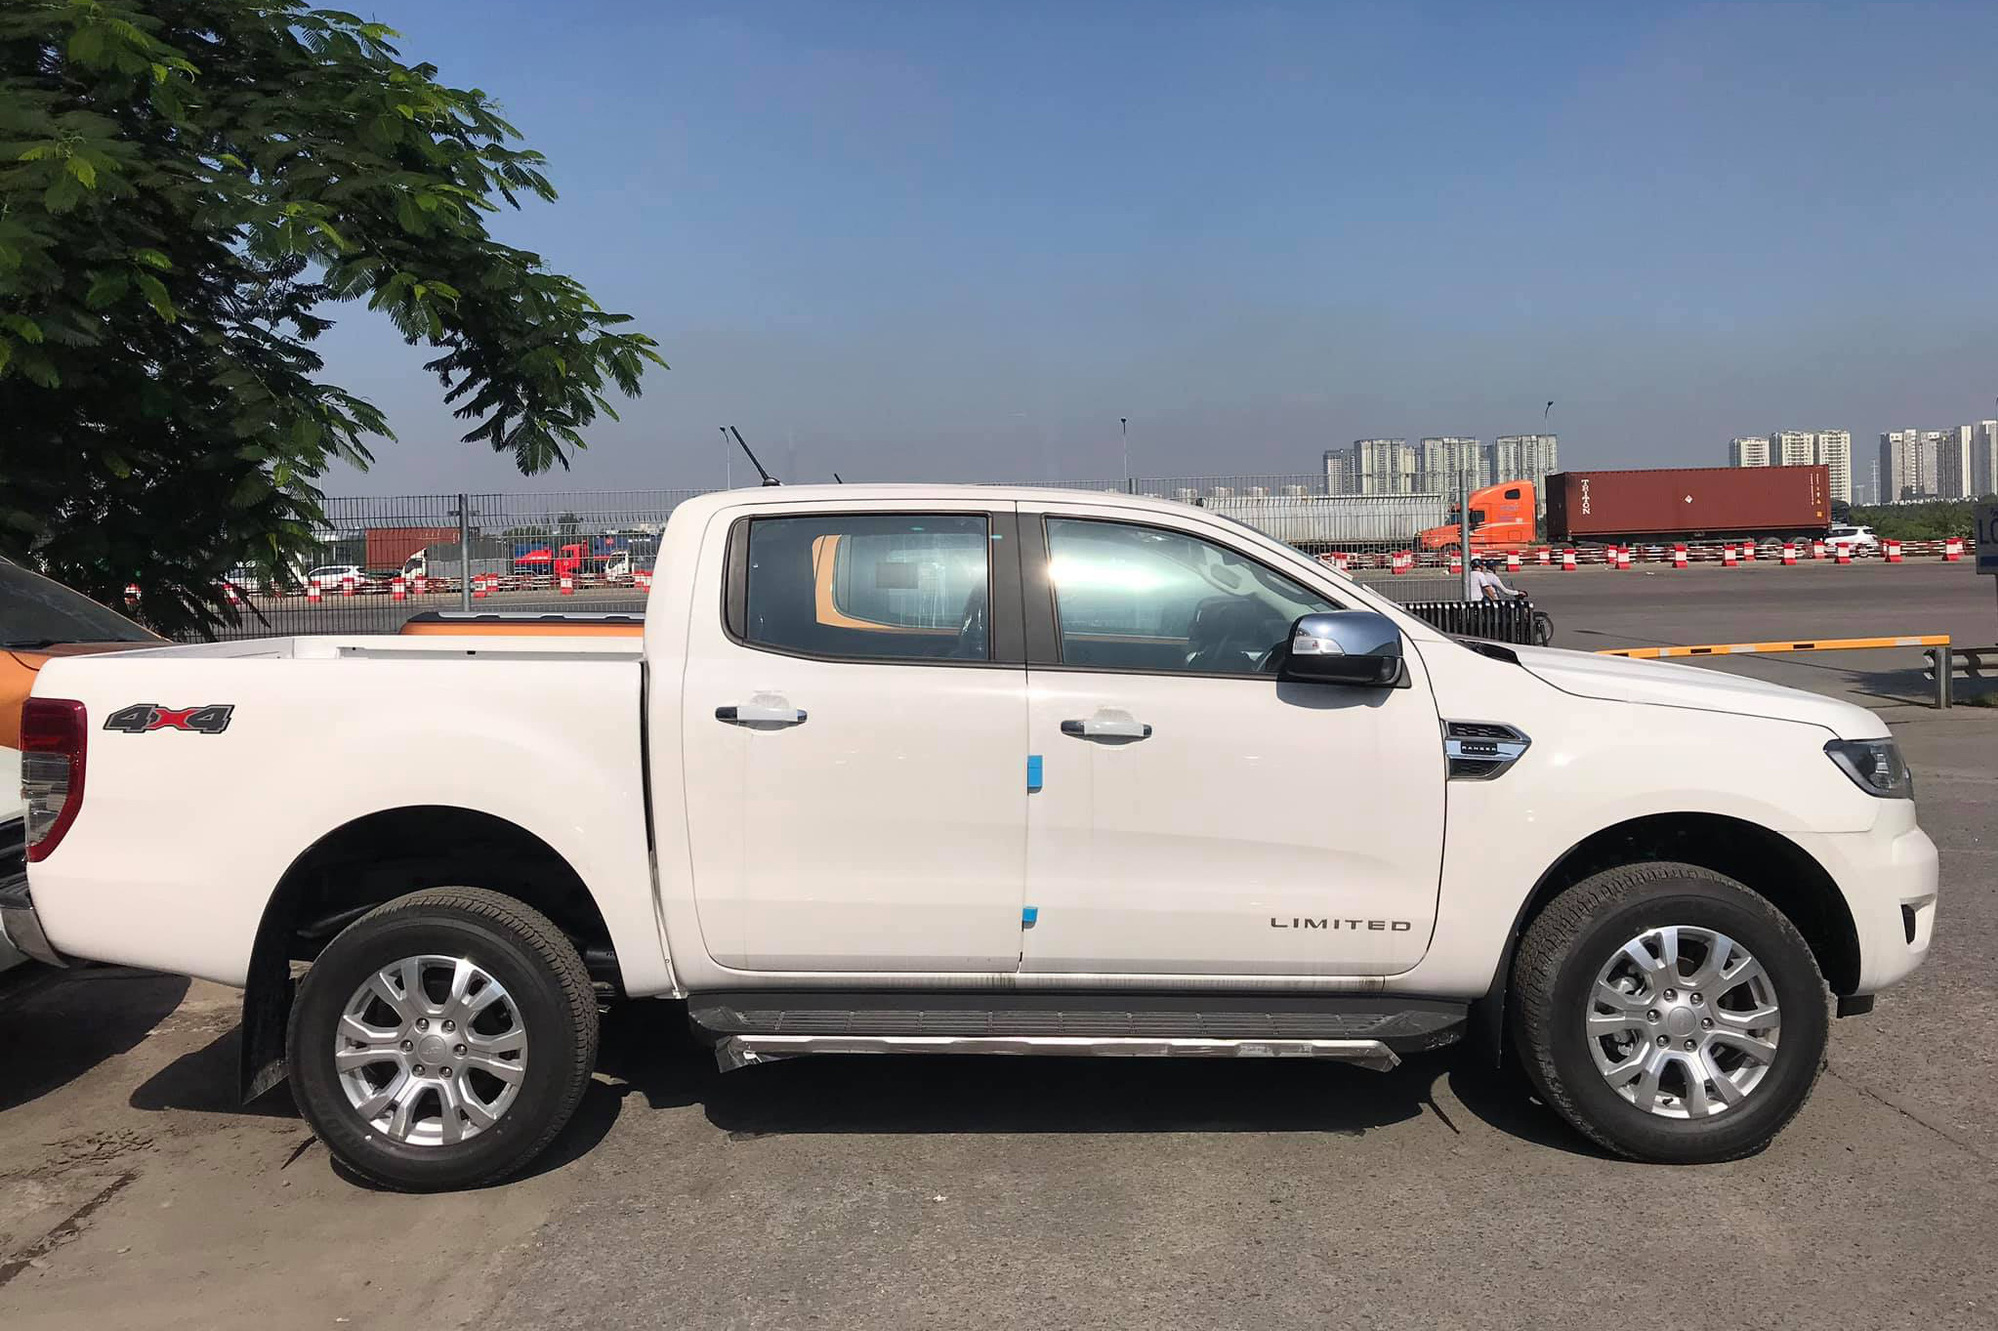 Ford Ranger và Everest 2021 cập cảng Việt Nam: Vua doanh số nâng cấp chạy nước rút cuối năm, giá vẫn giảm hàng chục triệu đồng - Ảnh 1.